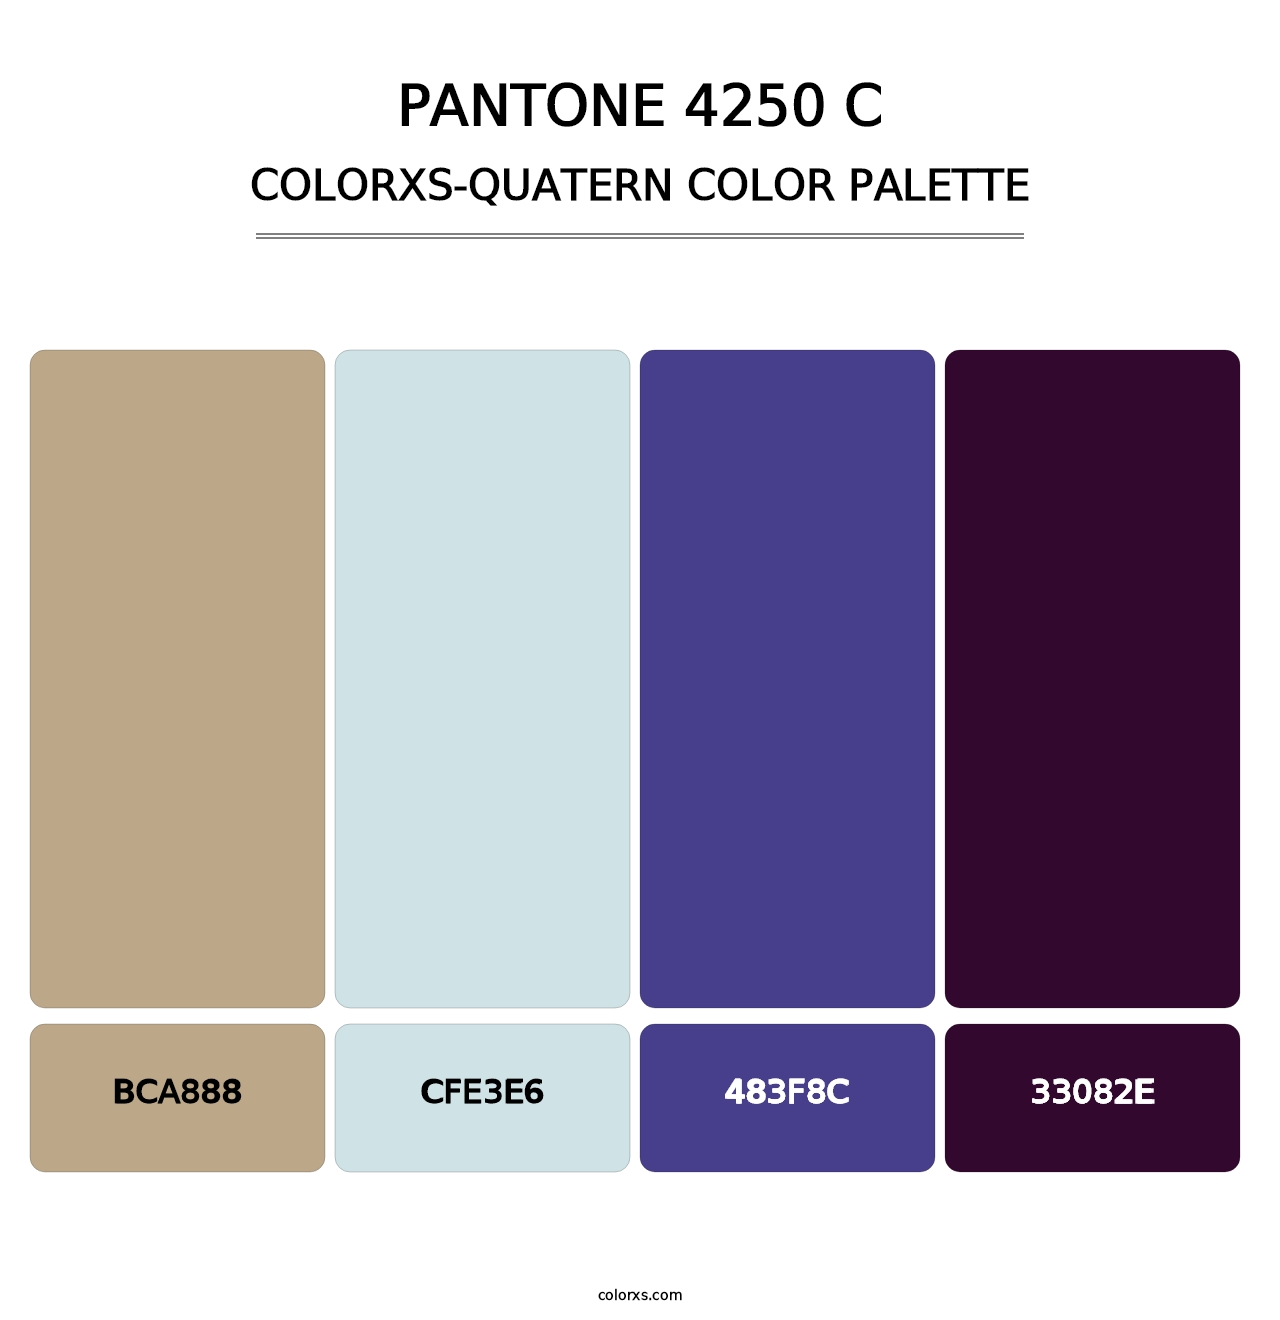 PANTONE 4250 C - Colorxs Quatern Palette